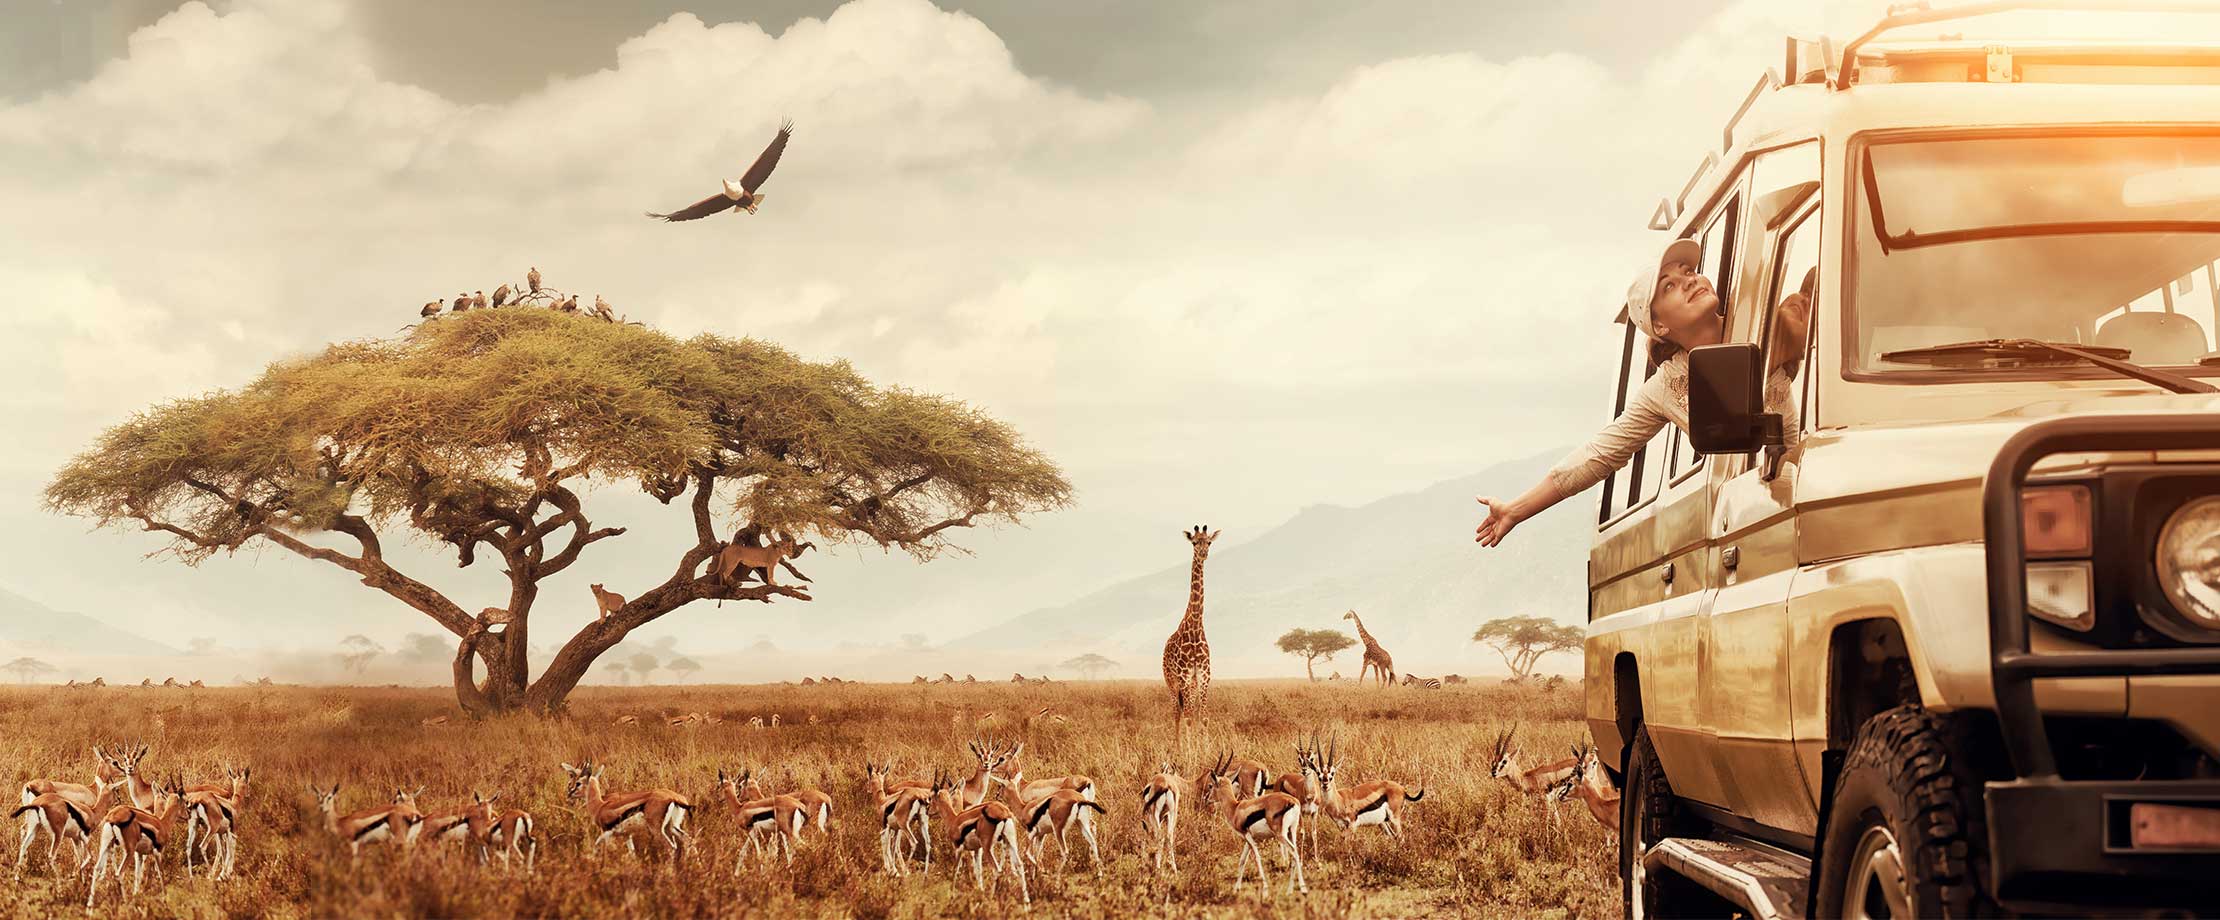 Ein Safari-Jeep fährt durch eine Steppenlandschaft. Im Hintergrund fressen Giraffen Blätter von den Bäumen und Vögel ziehen am Himmel ihre Kreise.